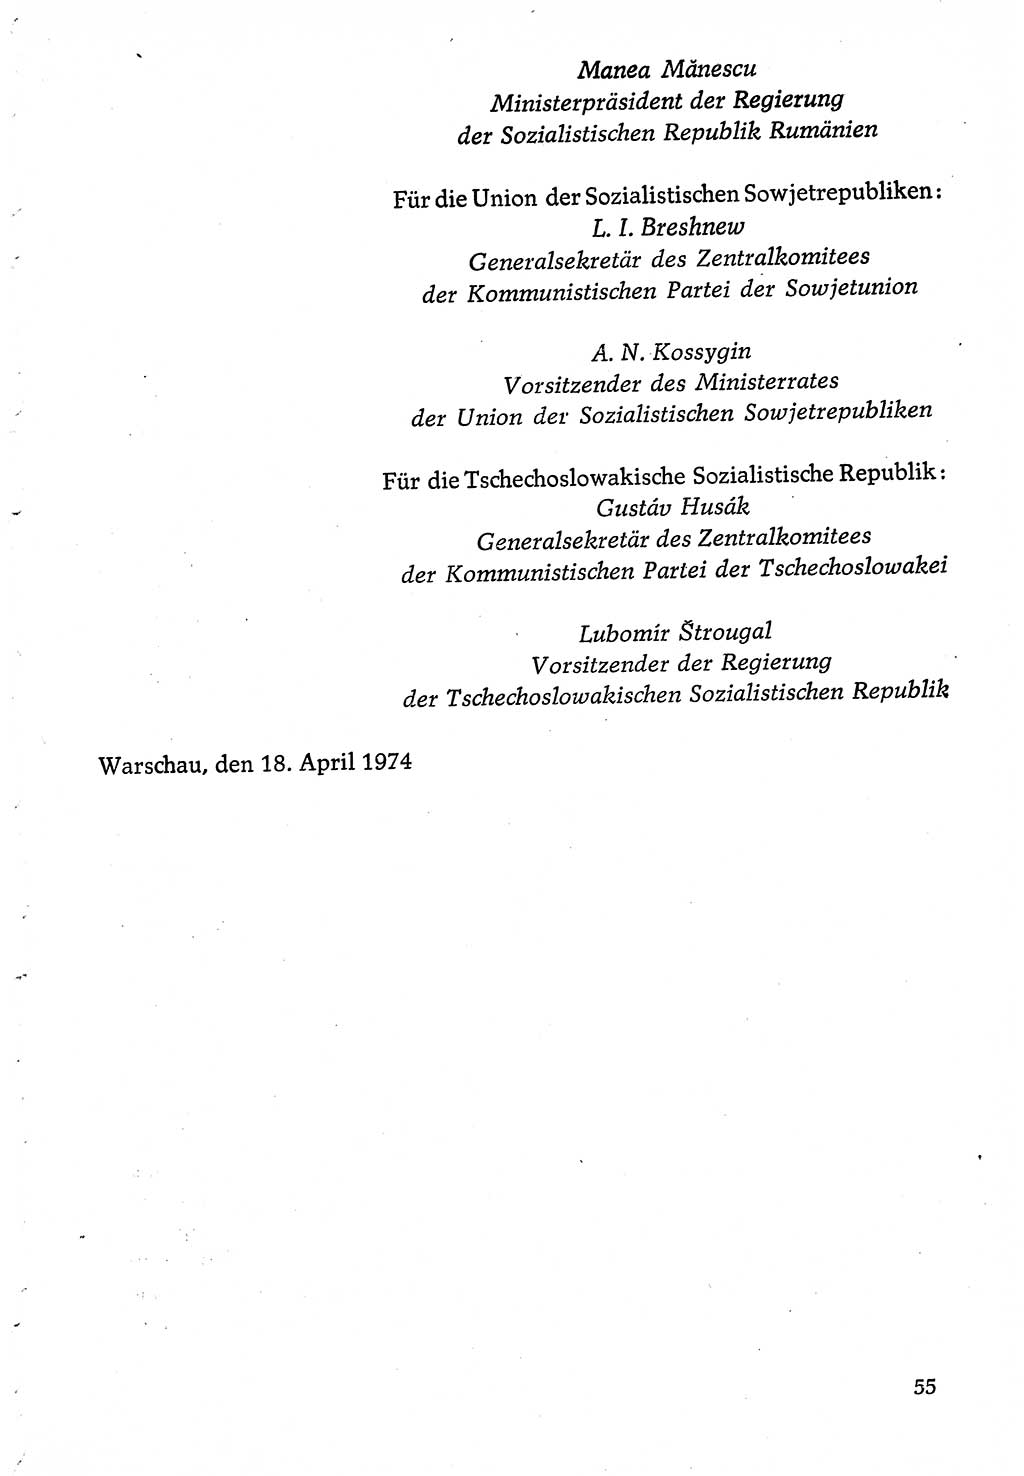 Dokumente der Sozialistischen Einheitspartei Deutschlands (SED) [Deutsche Demokratische Republik (DDR)] 1974-1975, Seite 55 (Dok. SED DDR 1978, Bd. ⅩⅤ, S. 55)